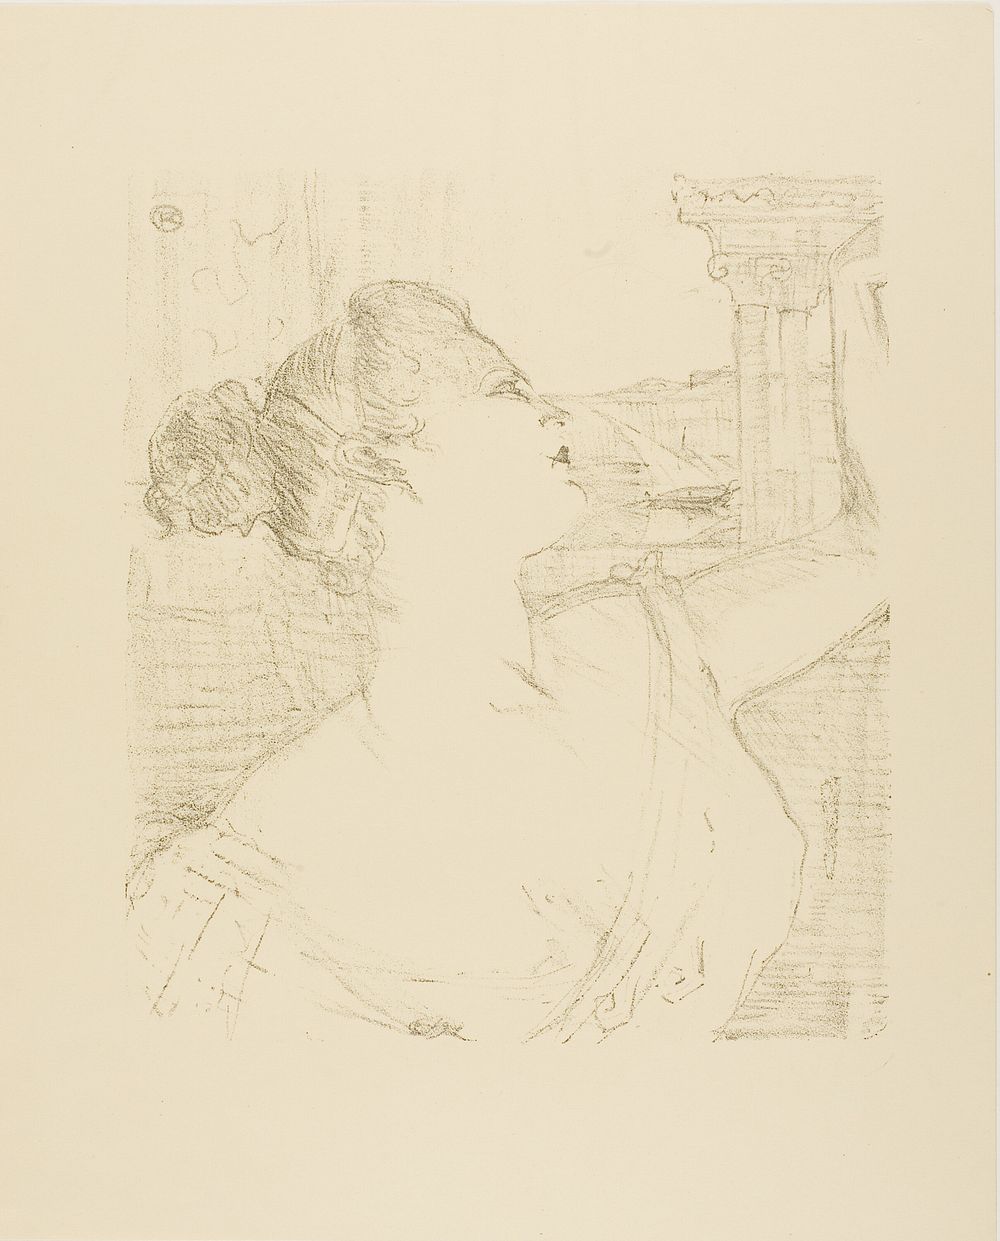 Sybil Sanderson, from Treize Lithographies by Henri de Toulouse-Lautrec